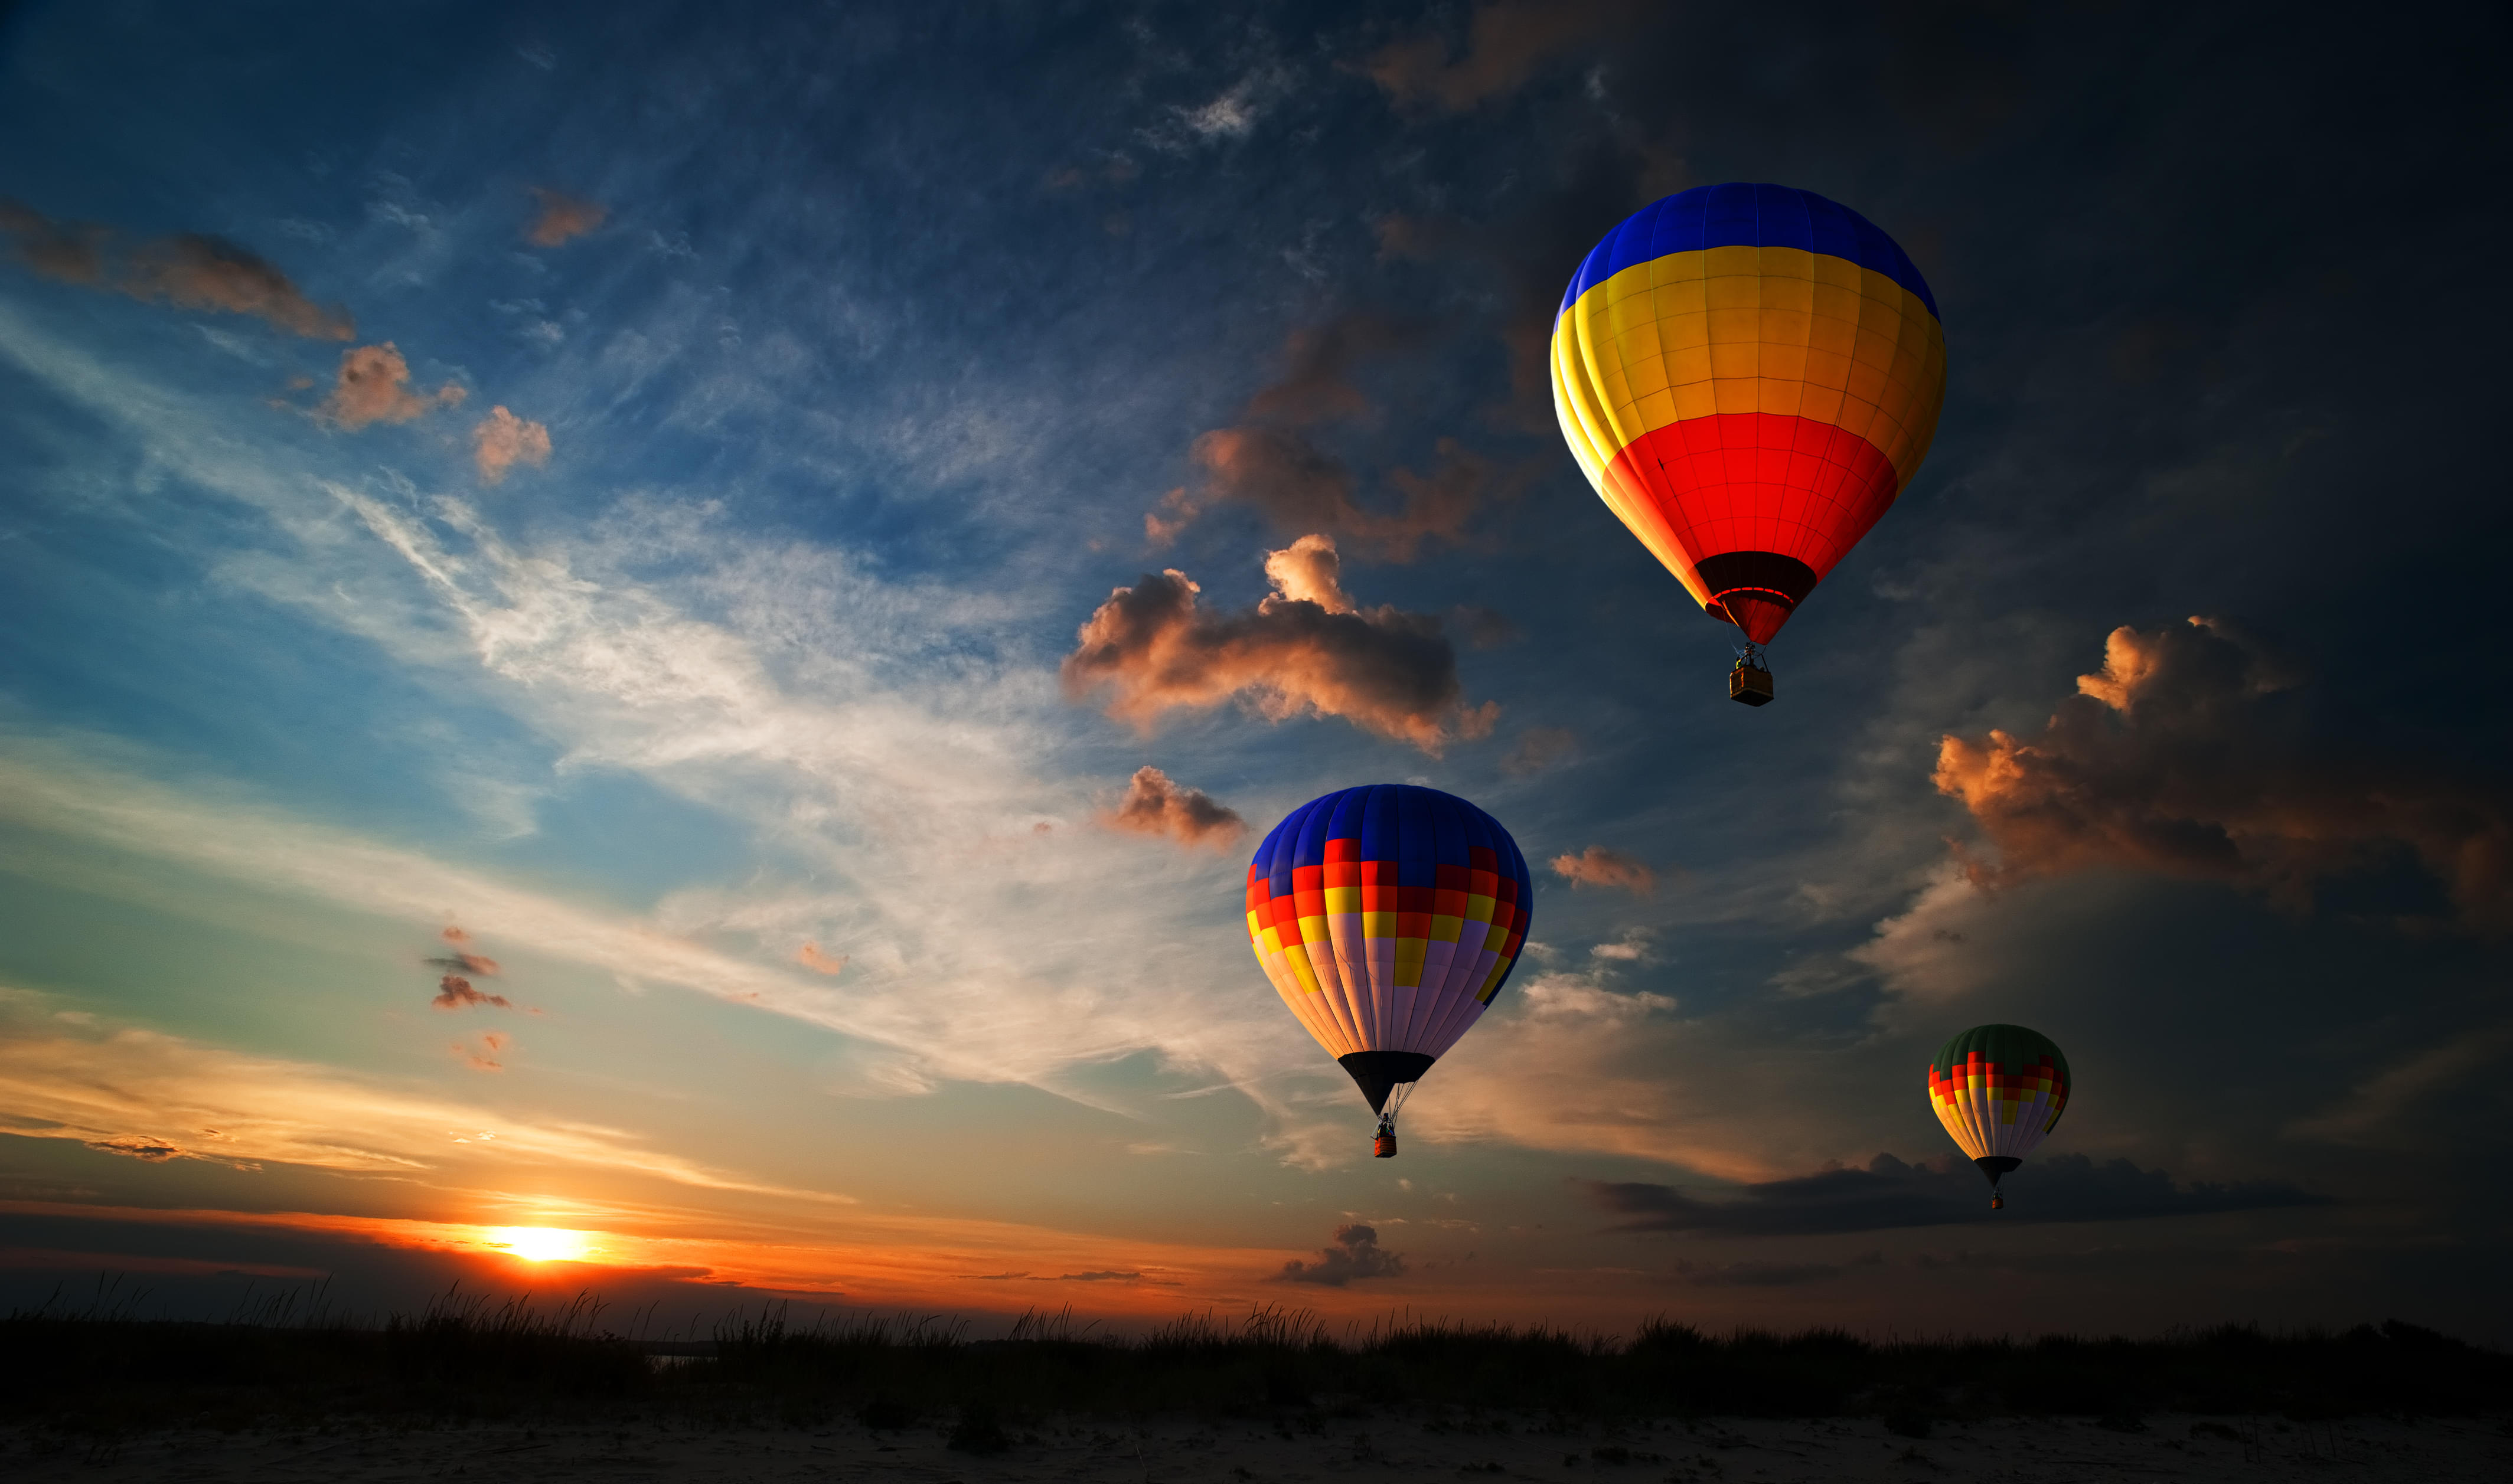 Hot Air Balloon Ride in Dubai Desert